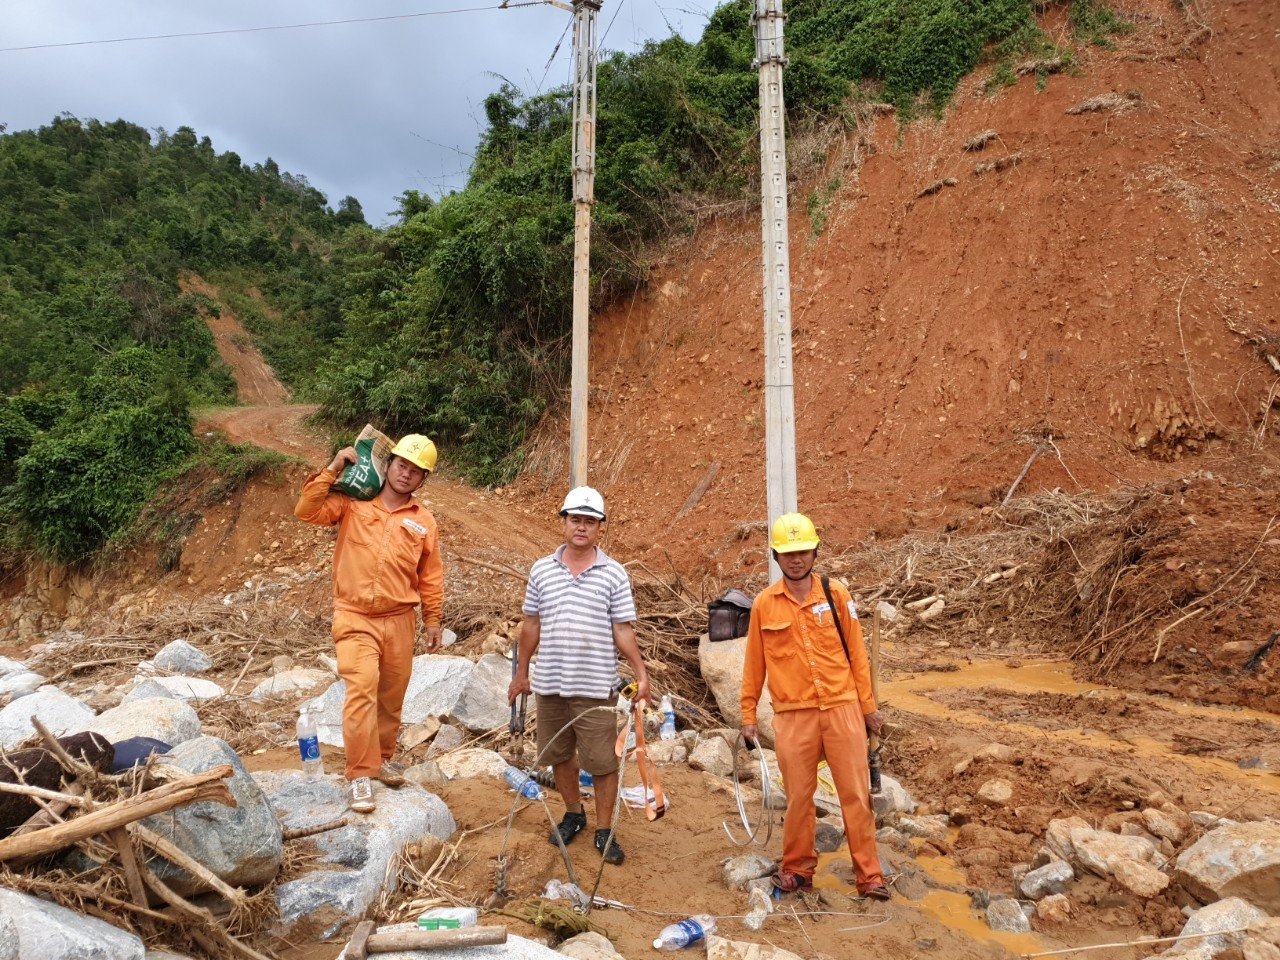 CBCNV Điện lực Hiệp Đức nỗ lực khắc phục hậu quả bão lũ, hoàn thành cấp điện lại phục vụ người dân xã Phước Lộc. Ảnh: KIÊN PHAN